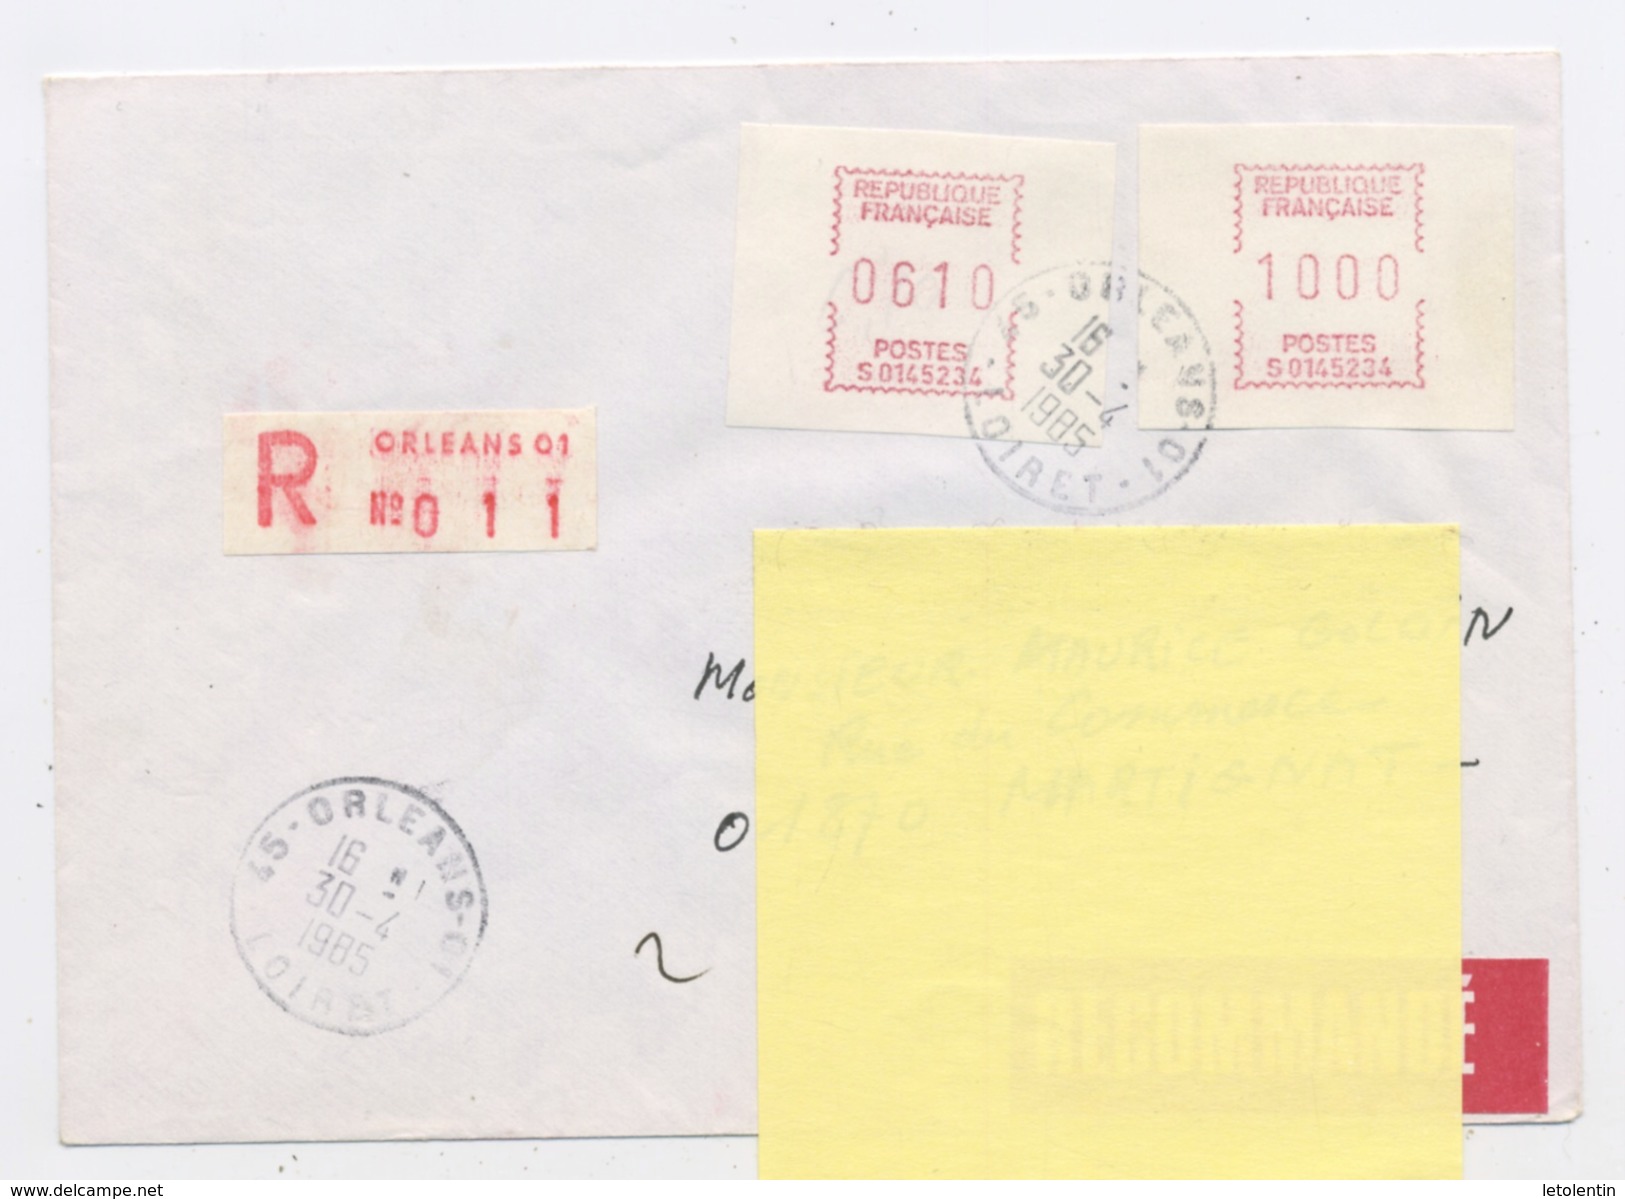 30#  FRANCE -  -  VIGNETTE  S 0145234  À 6,10+10,00  DE ORLEANS SUR LETTRE RECOMMANDÉE DU 30/4/1985 - 1969 Montgeron – White Paper – Frama/Satas